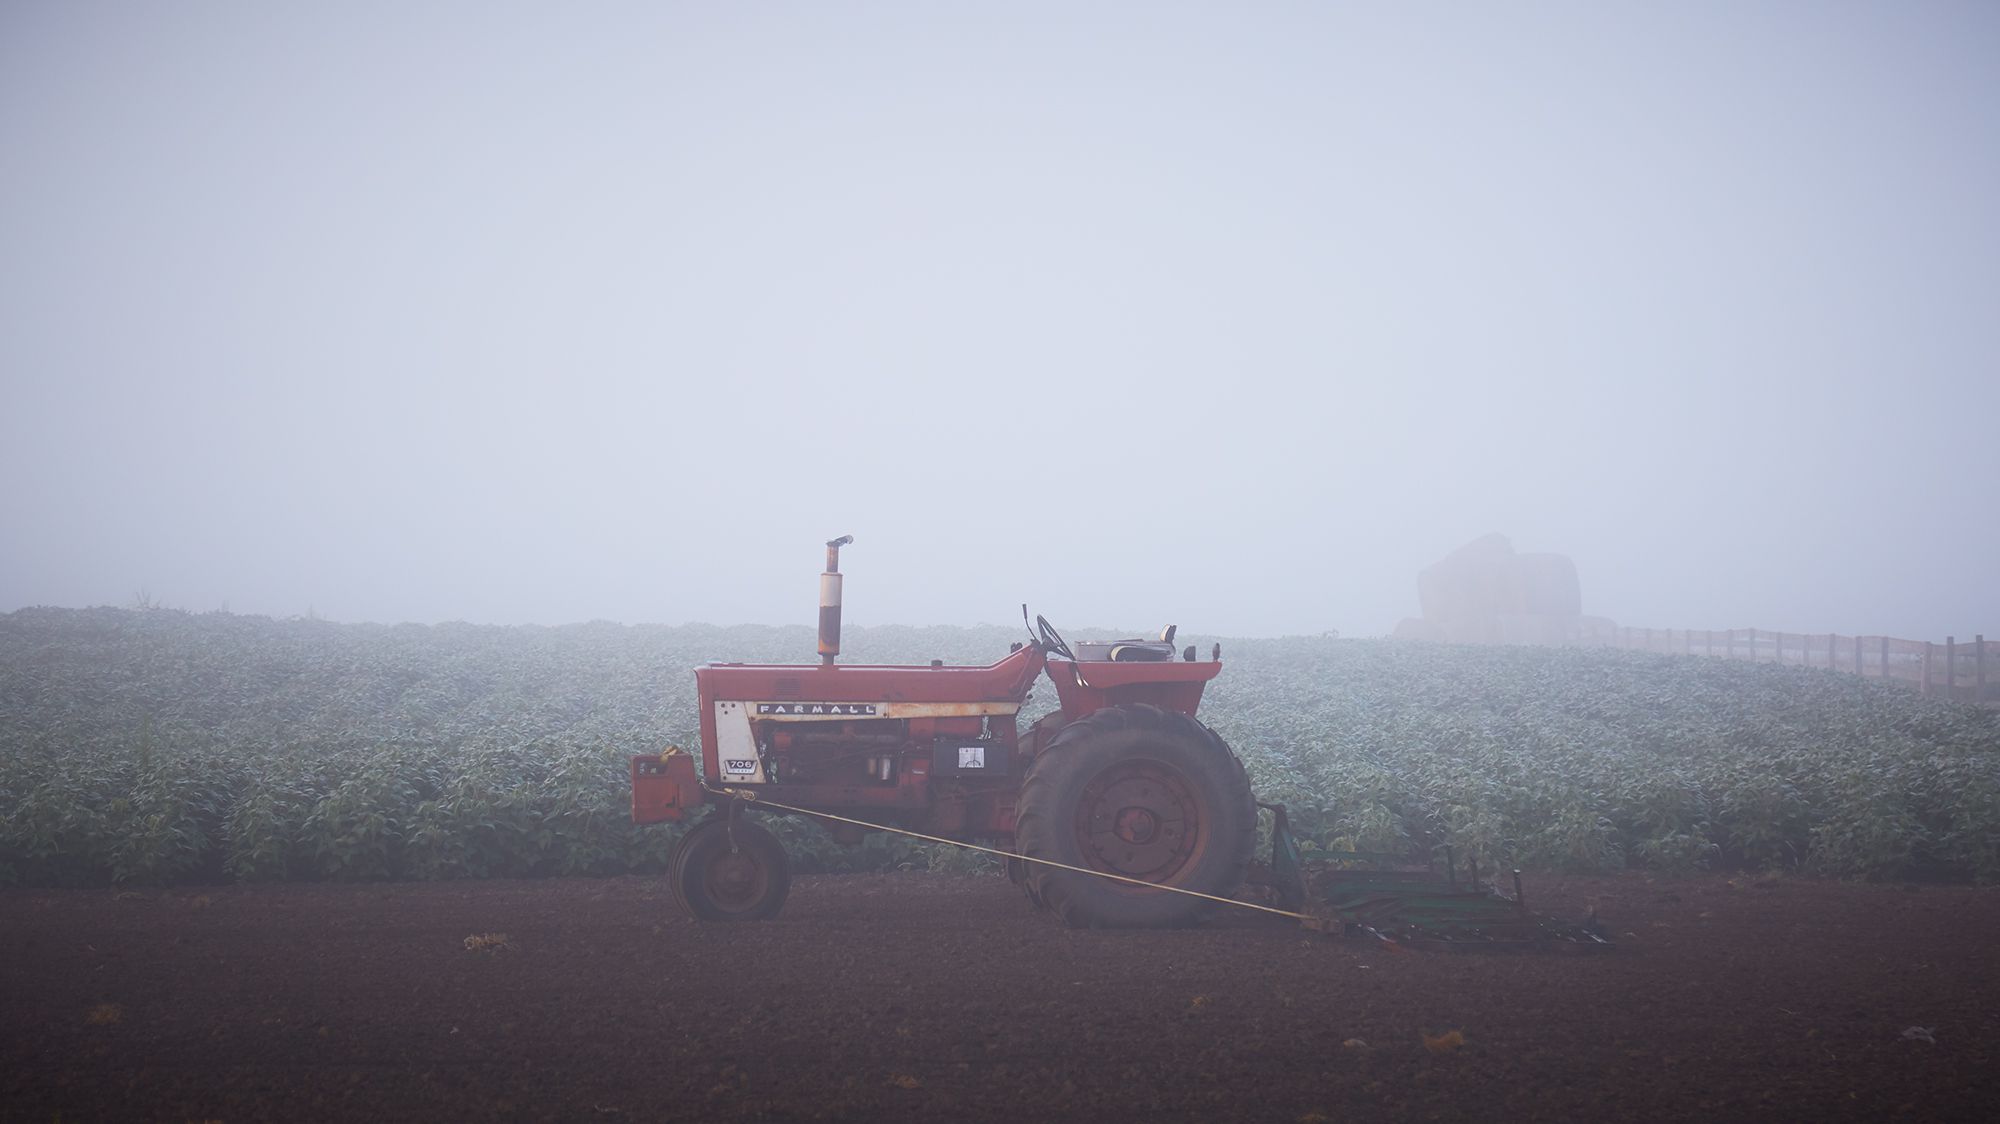 Mist rises on a suburban farm.